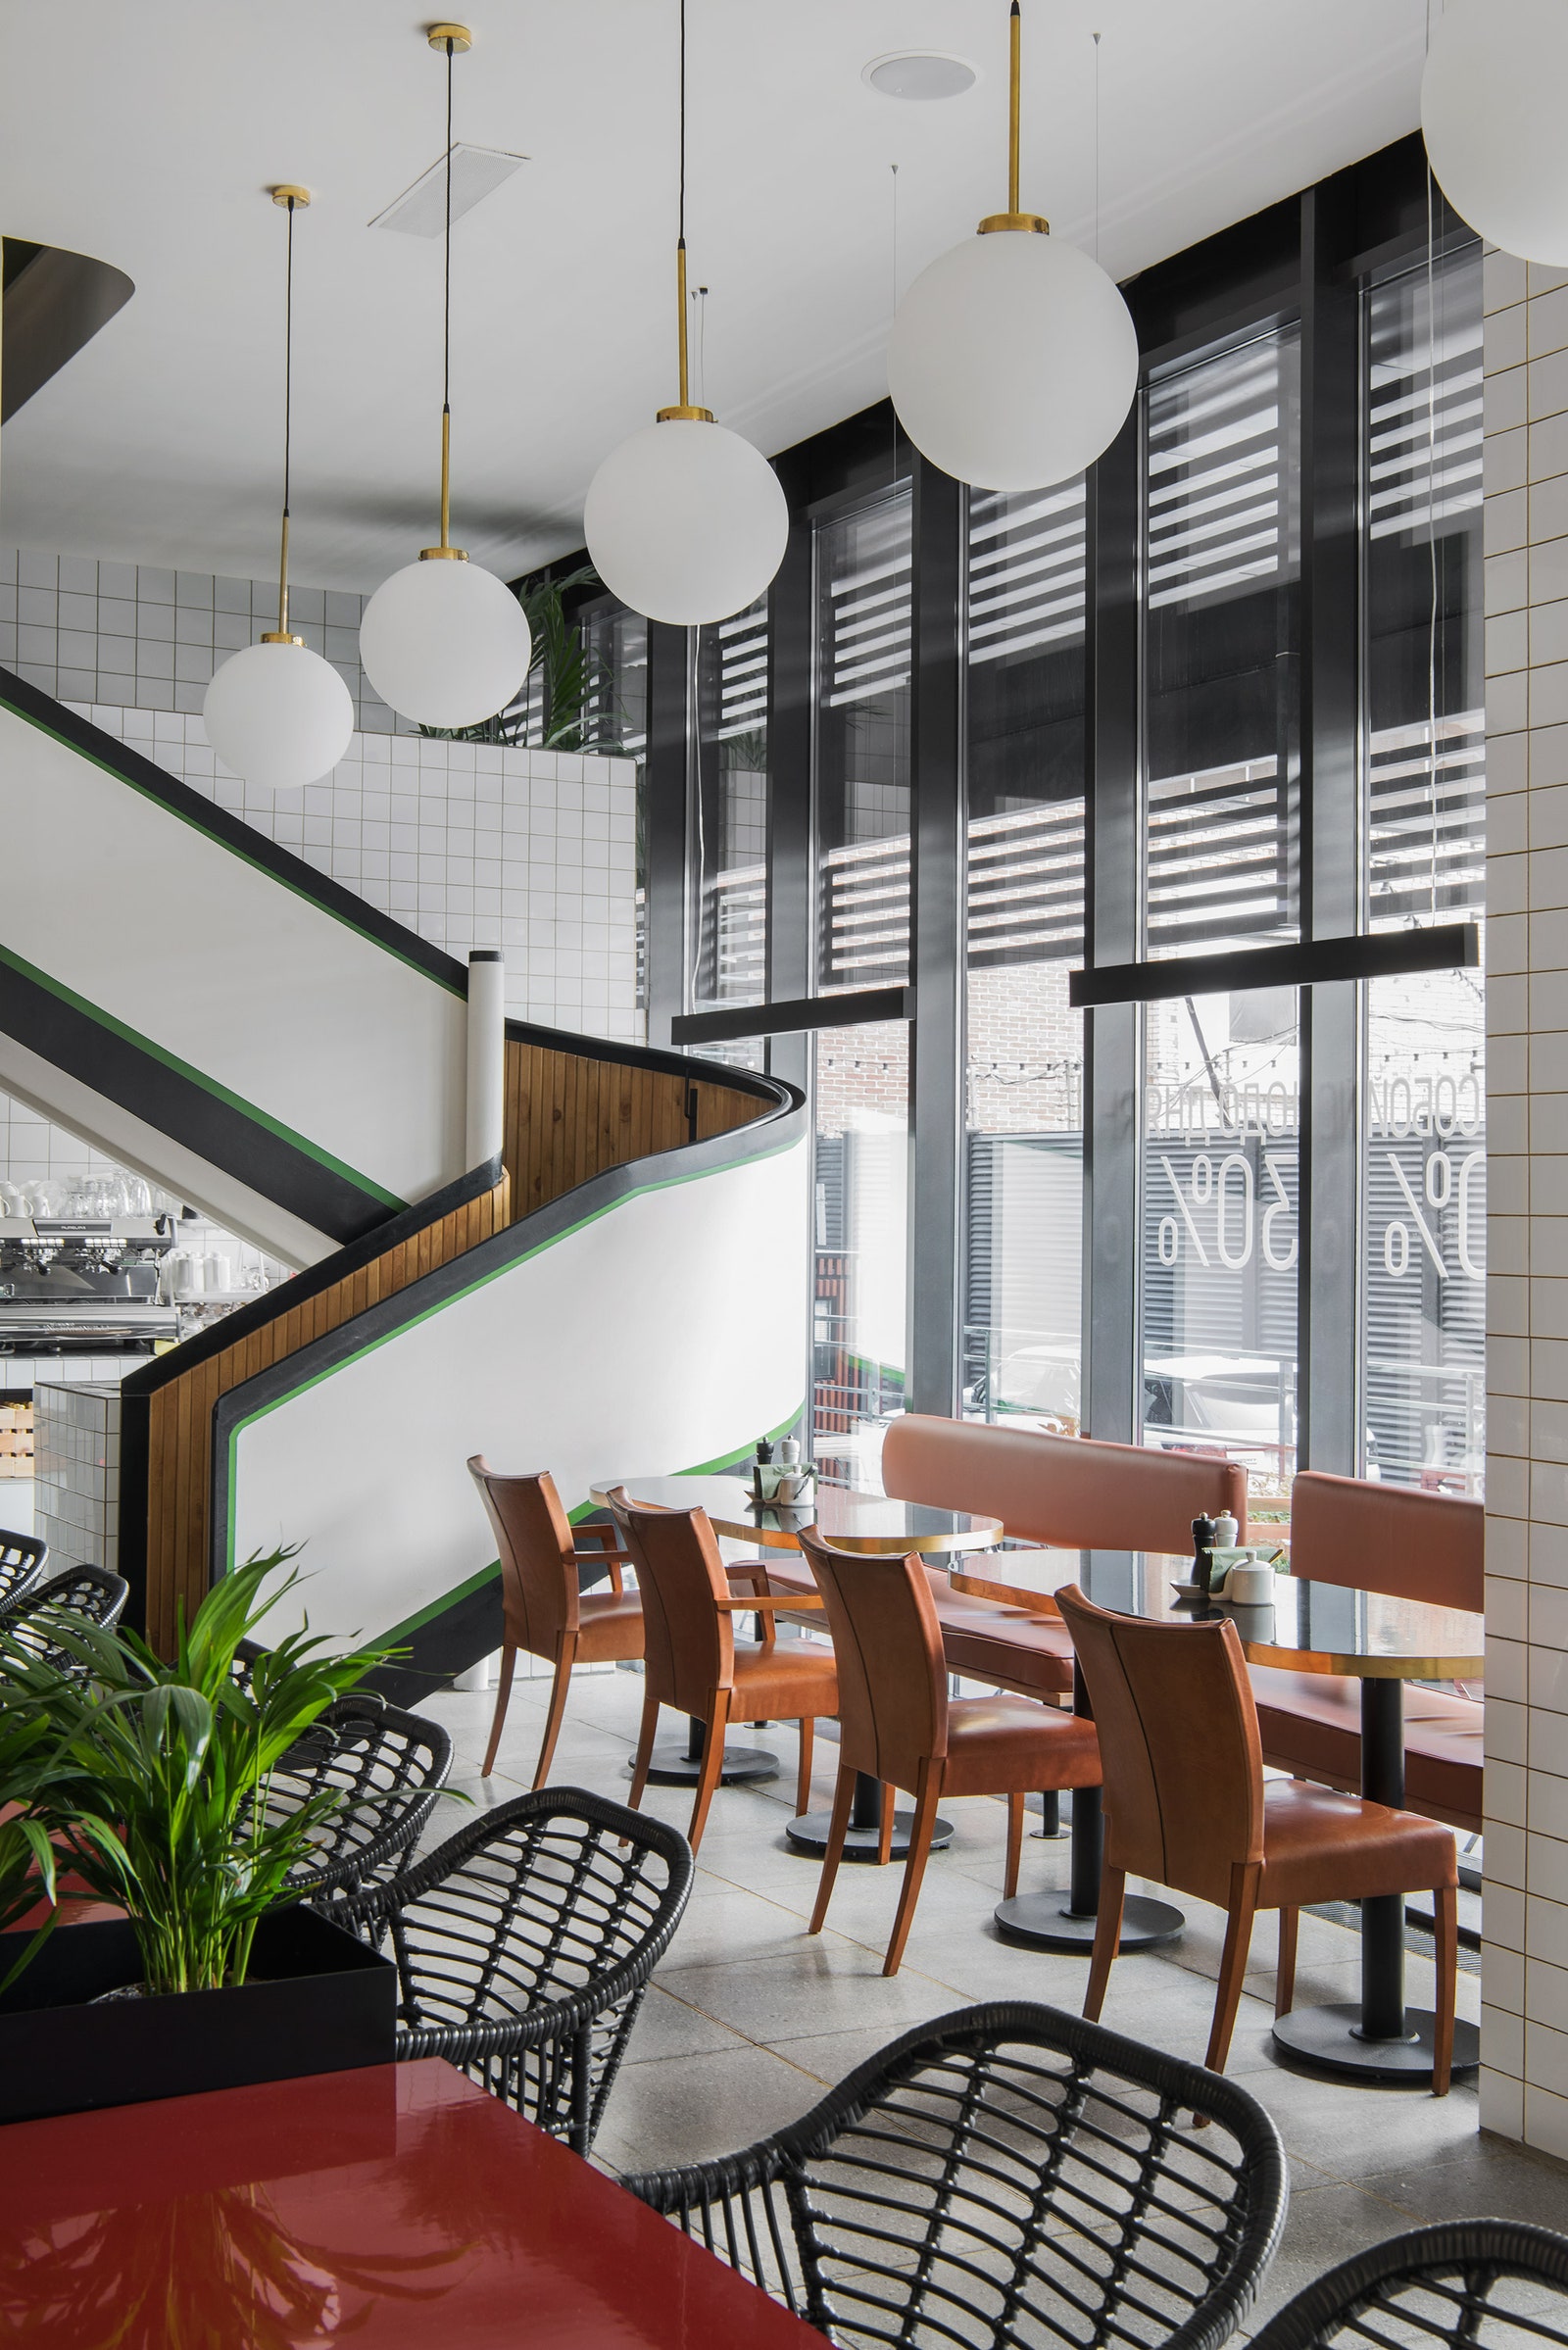 Московское кафе Caf 359 вдохновленное интерьерами флорентийского вокзала